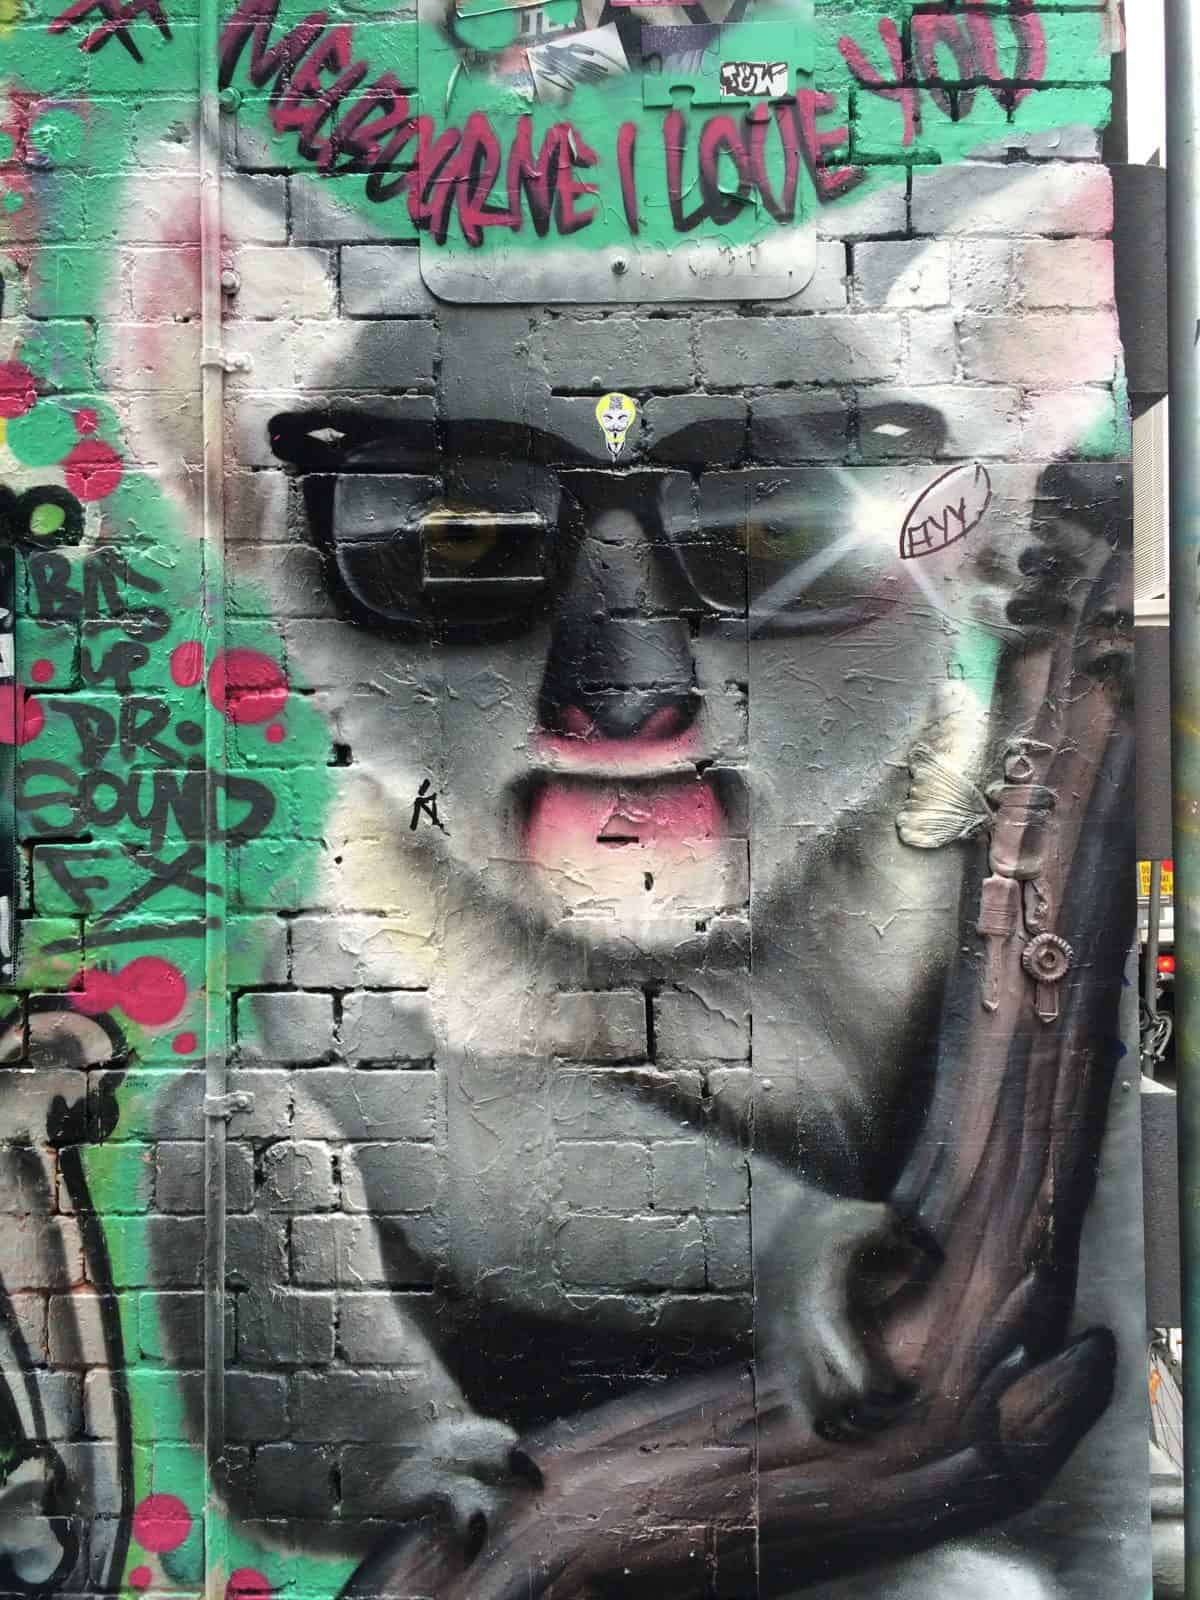 Melbourne Loves Street Art